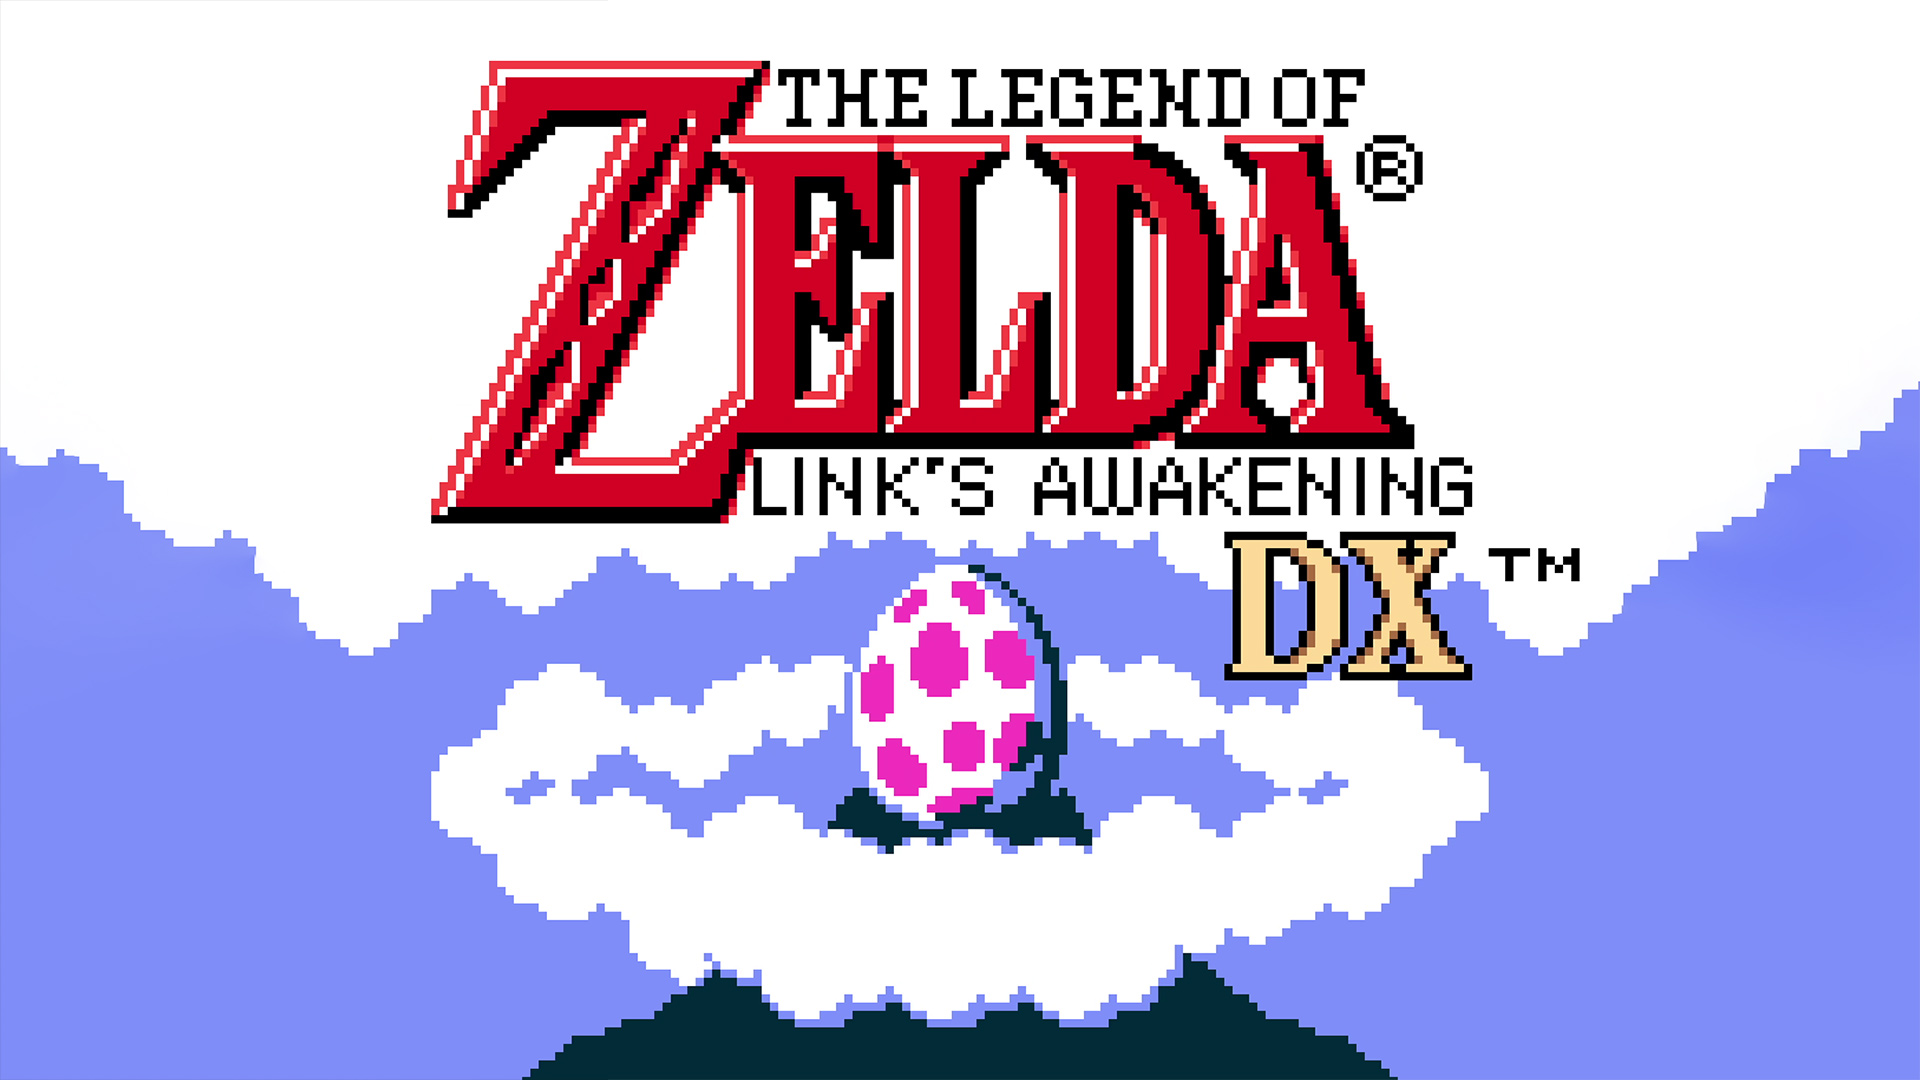 The Legend of Zelda™: Link's Awakening DX™